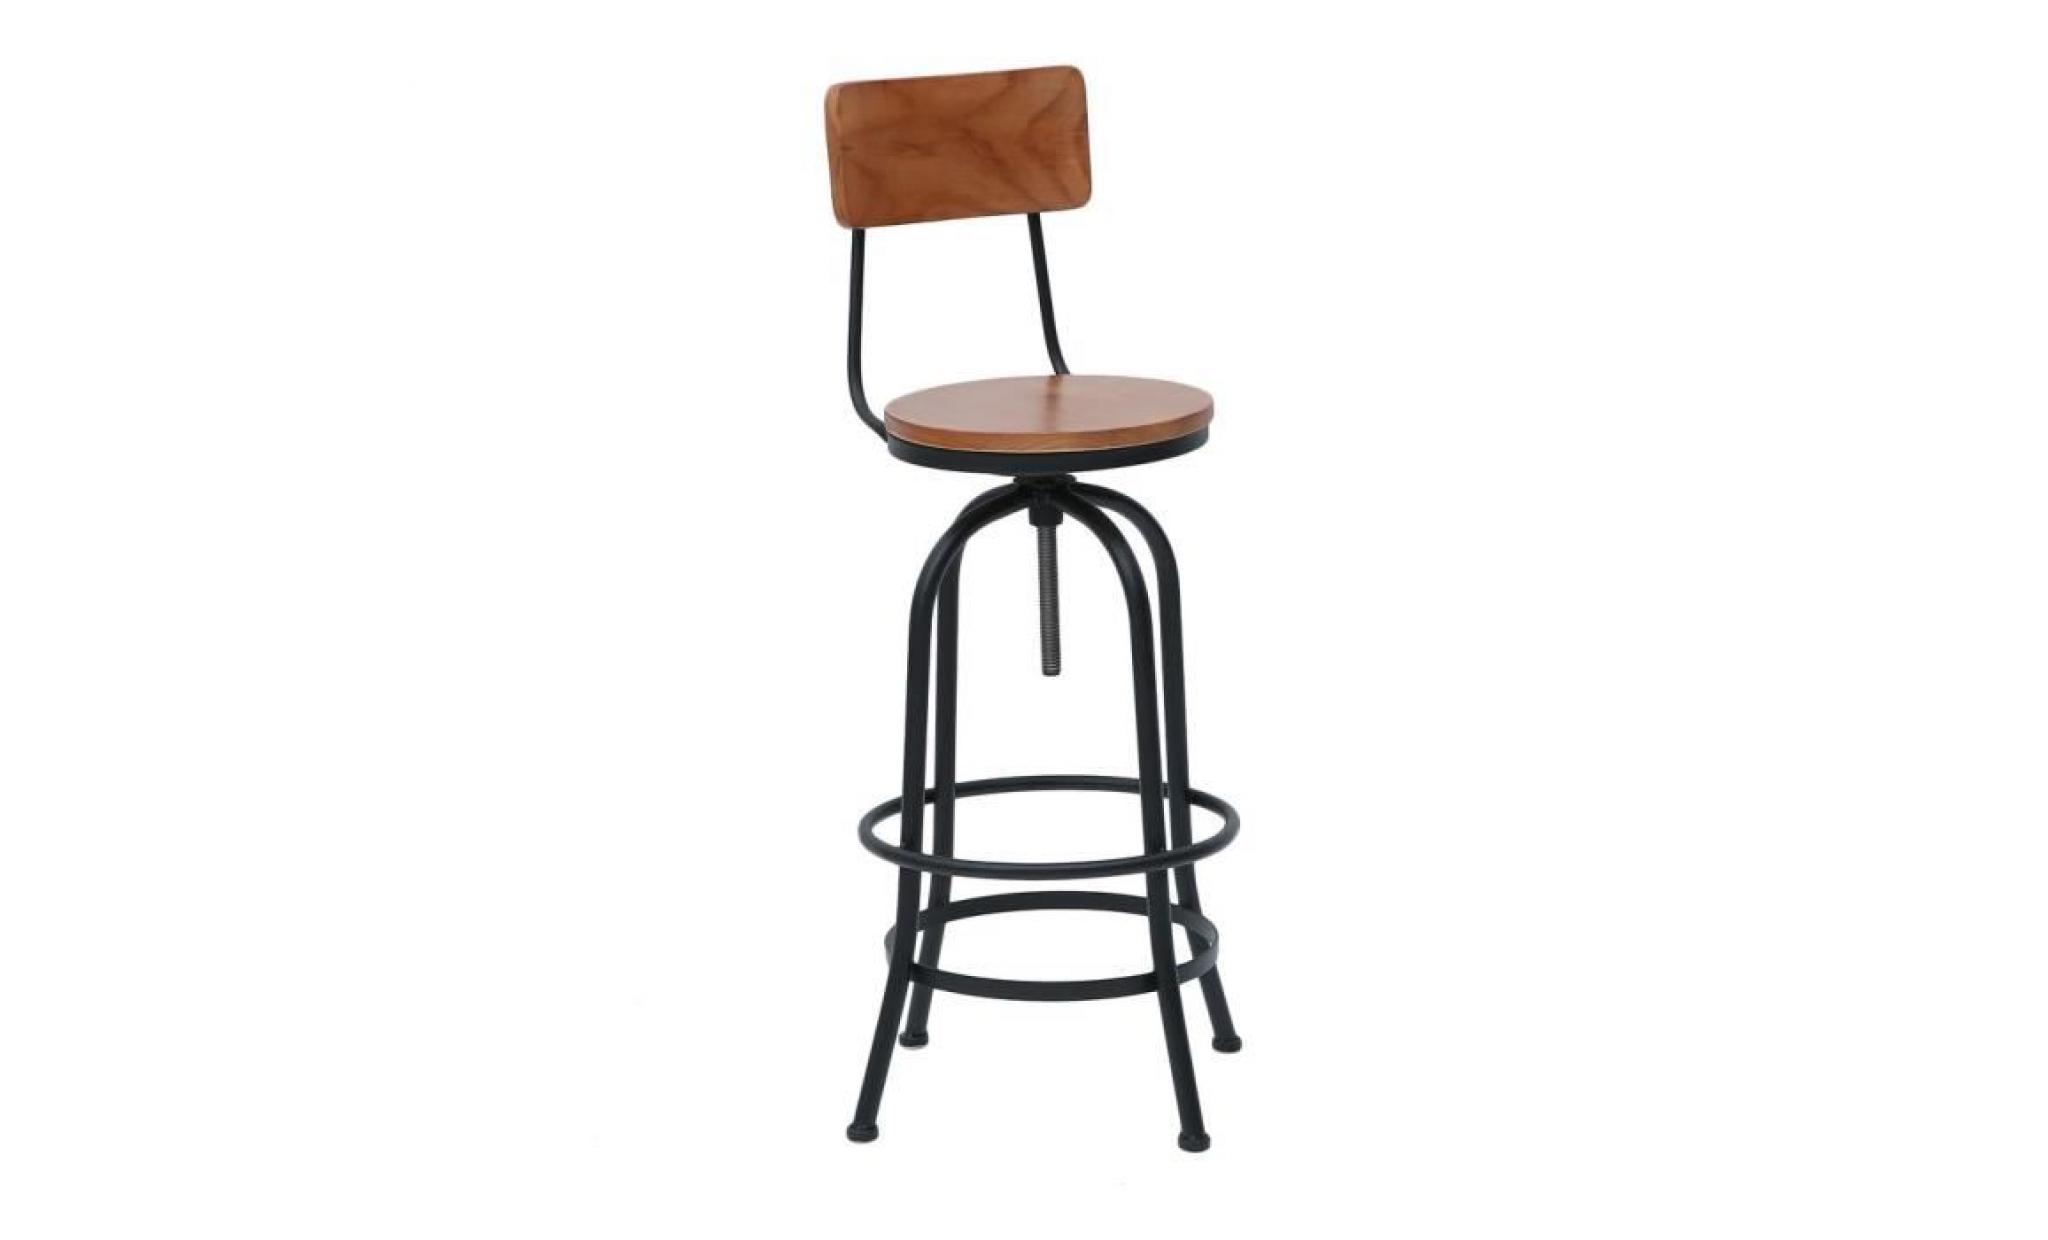 leshp® chaise de bar tabouret de bar haut vintage industriel hauteur réglable tabouret rond rotatif